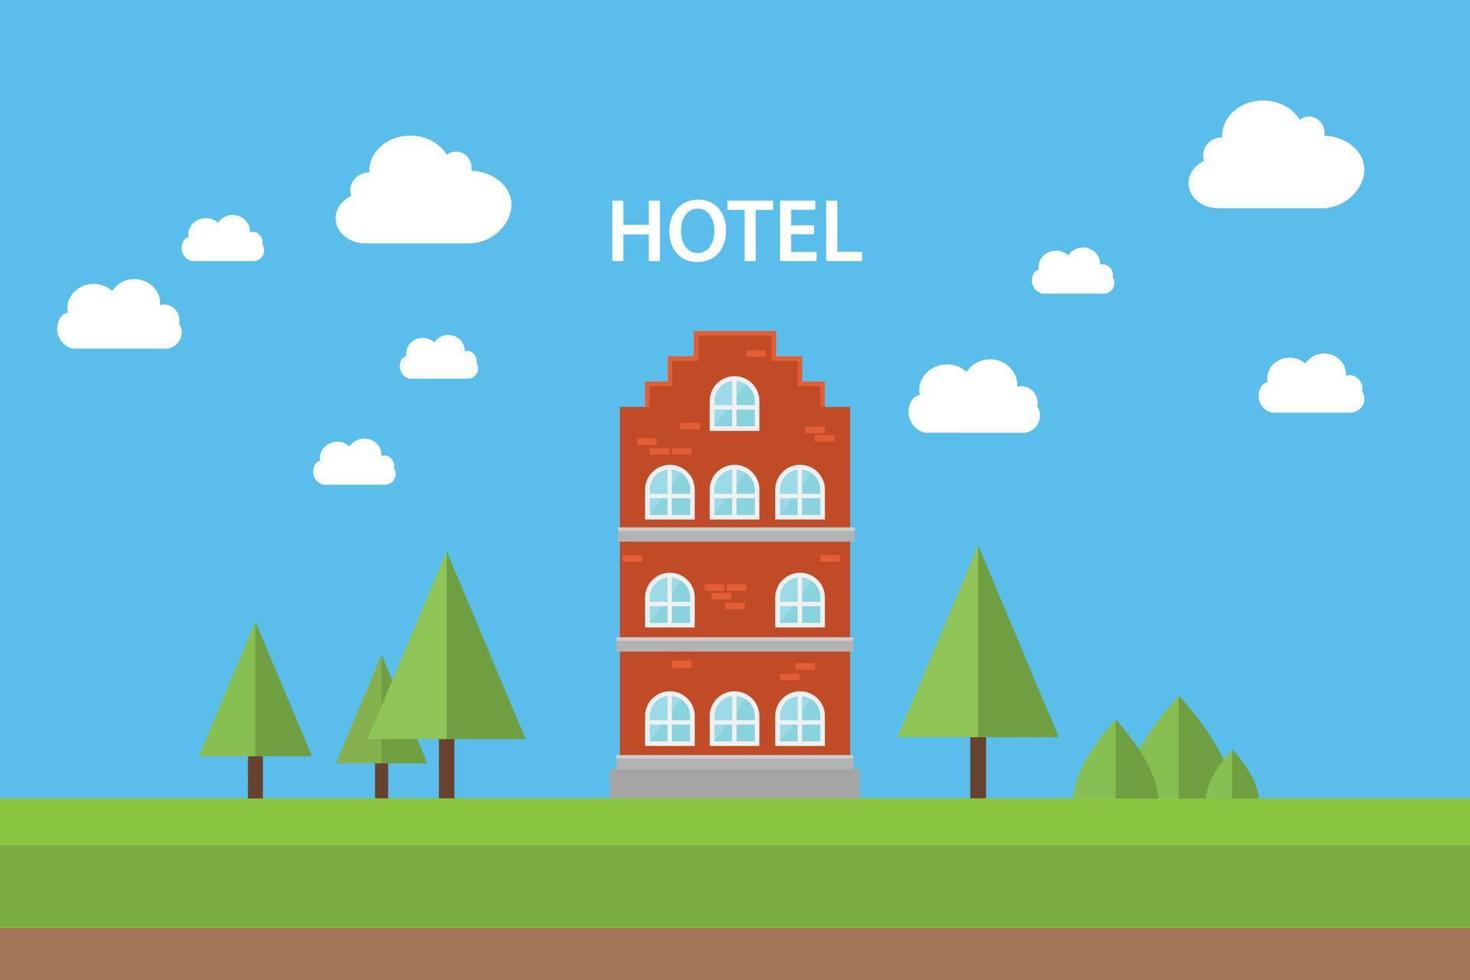 Hotelkonzept mit dem Gebäude, das mit flacher Baumvektorgraphikillustration des blauen Himmelshintergrundes steht vektor